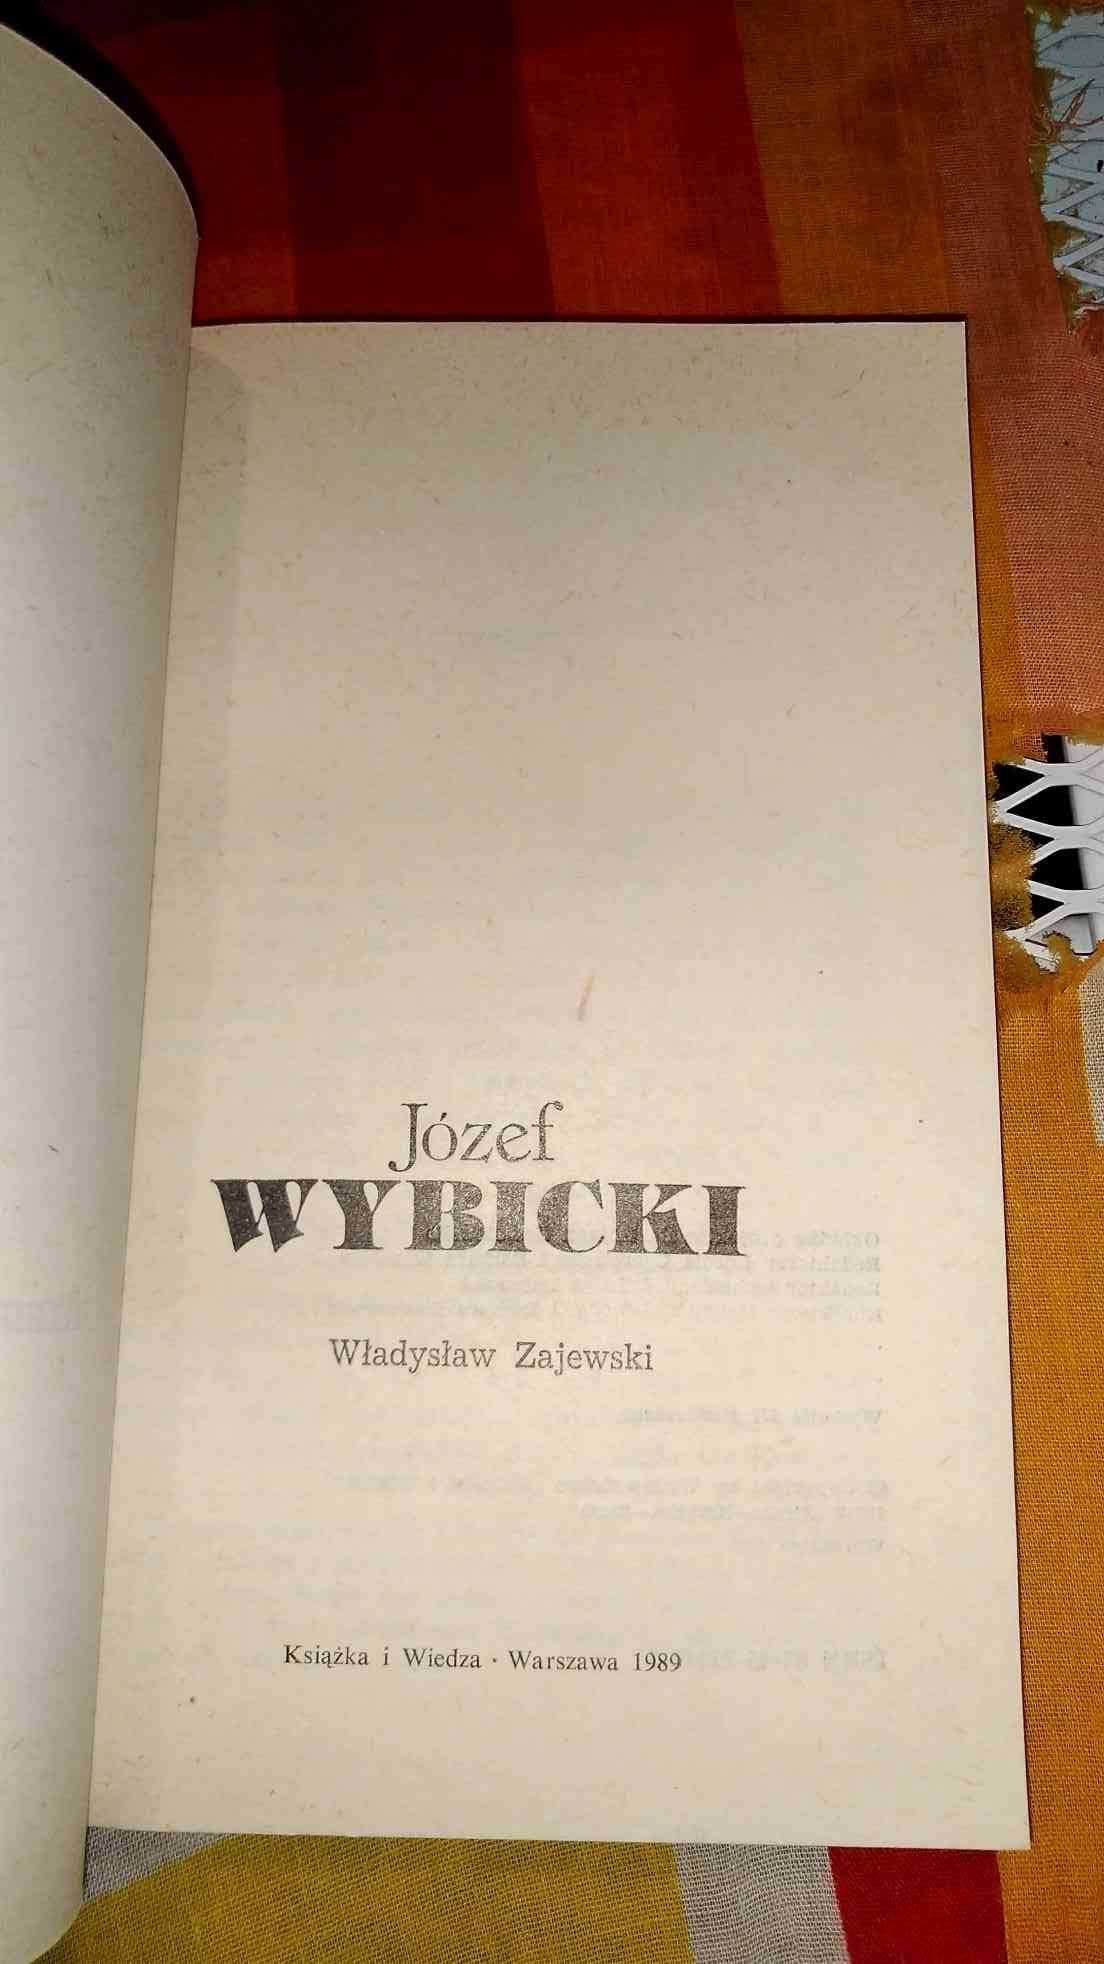 Józef
Wybicki
Władysław Zajewski